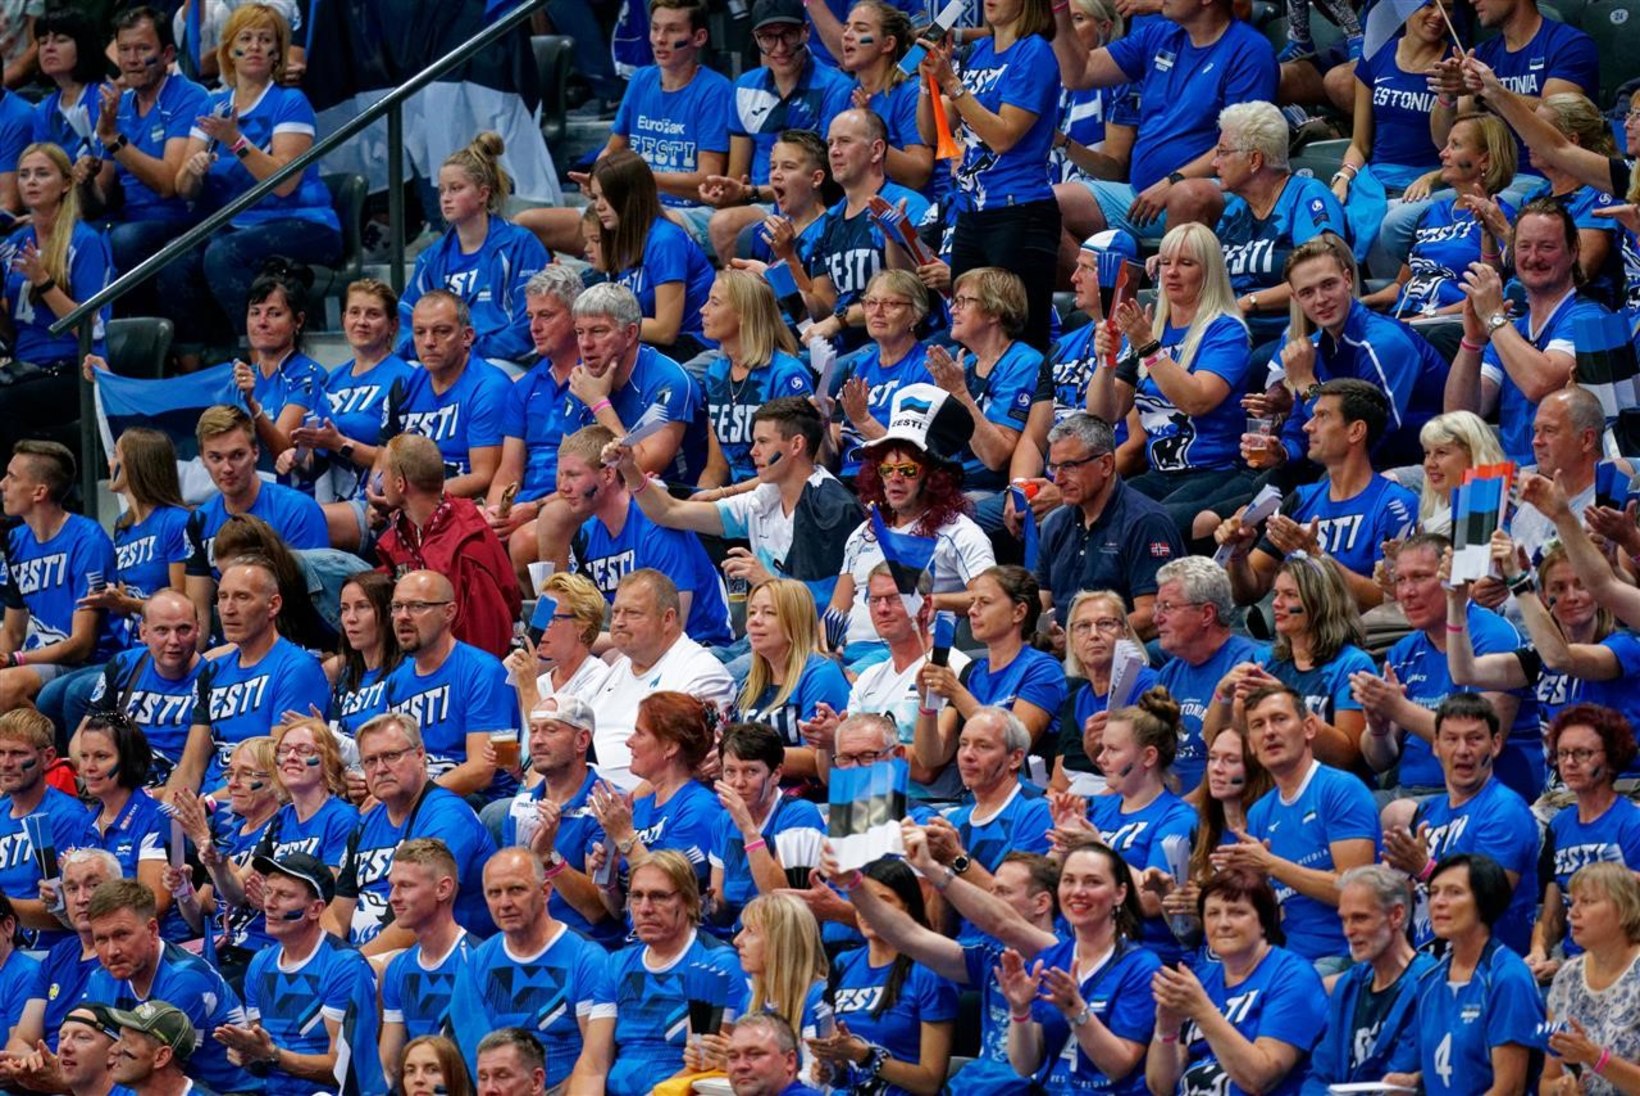 Hollandlased maksavad Eesti võrkpallifännide peo kinni